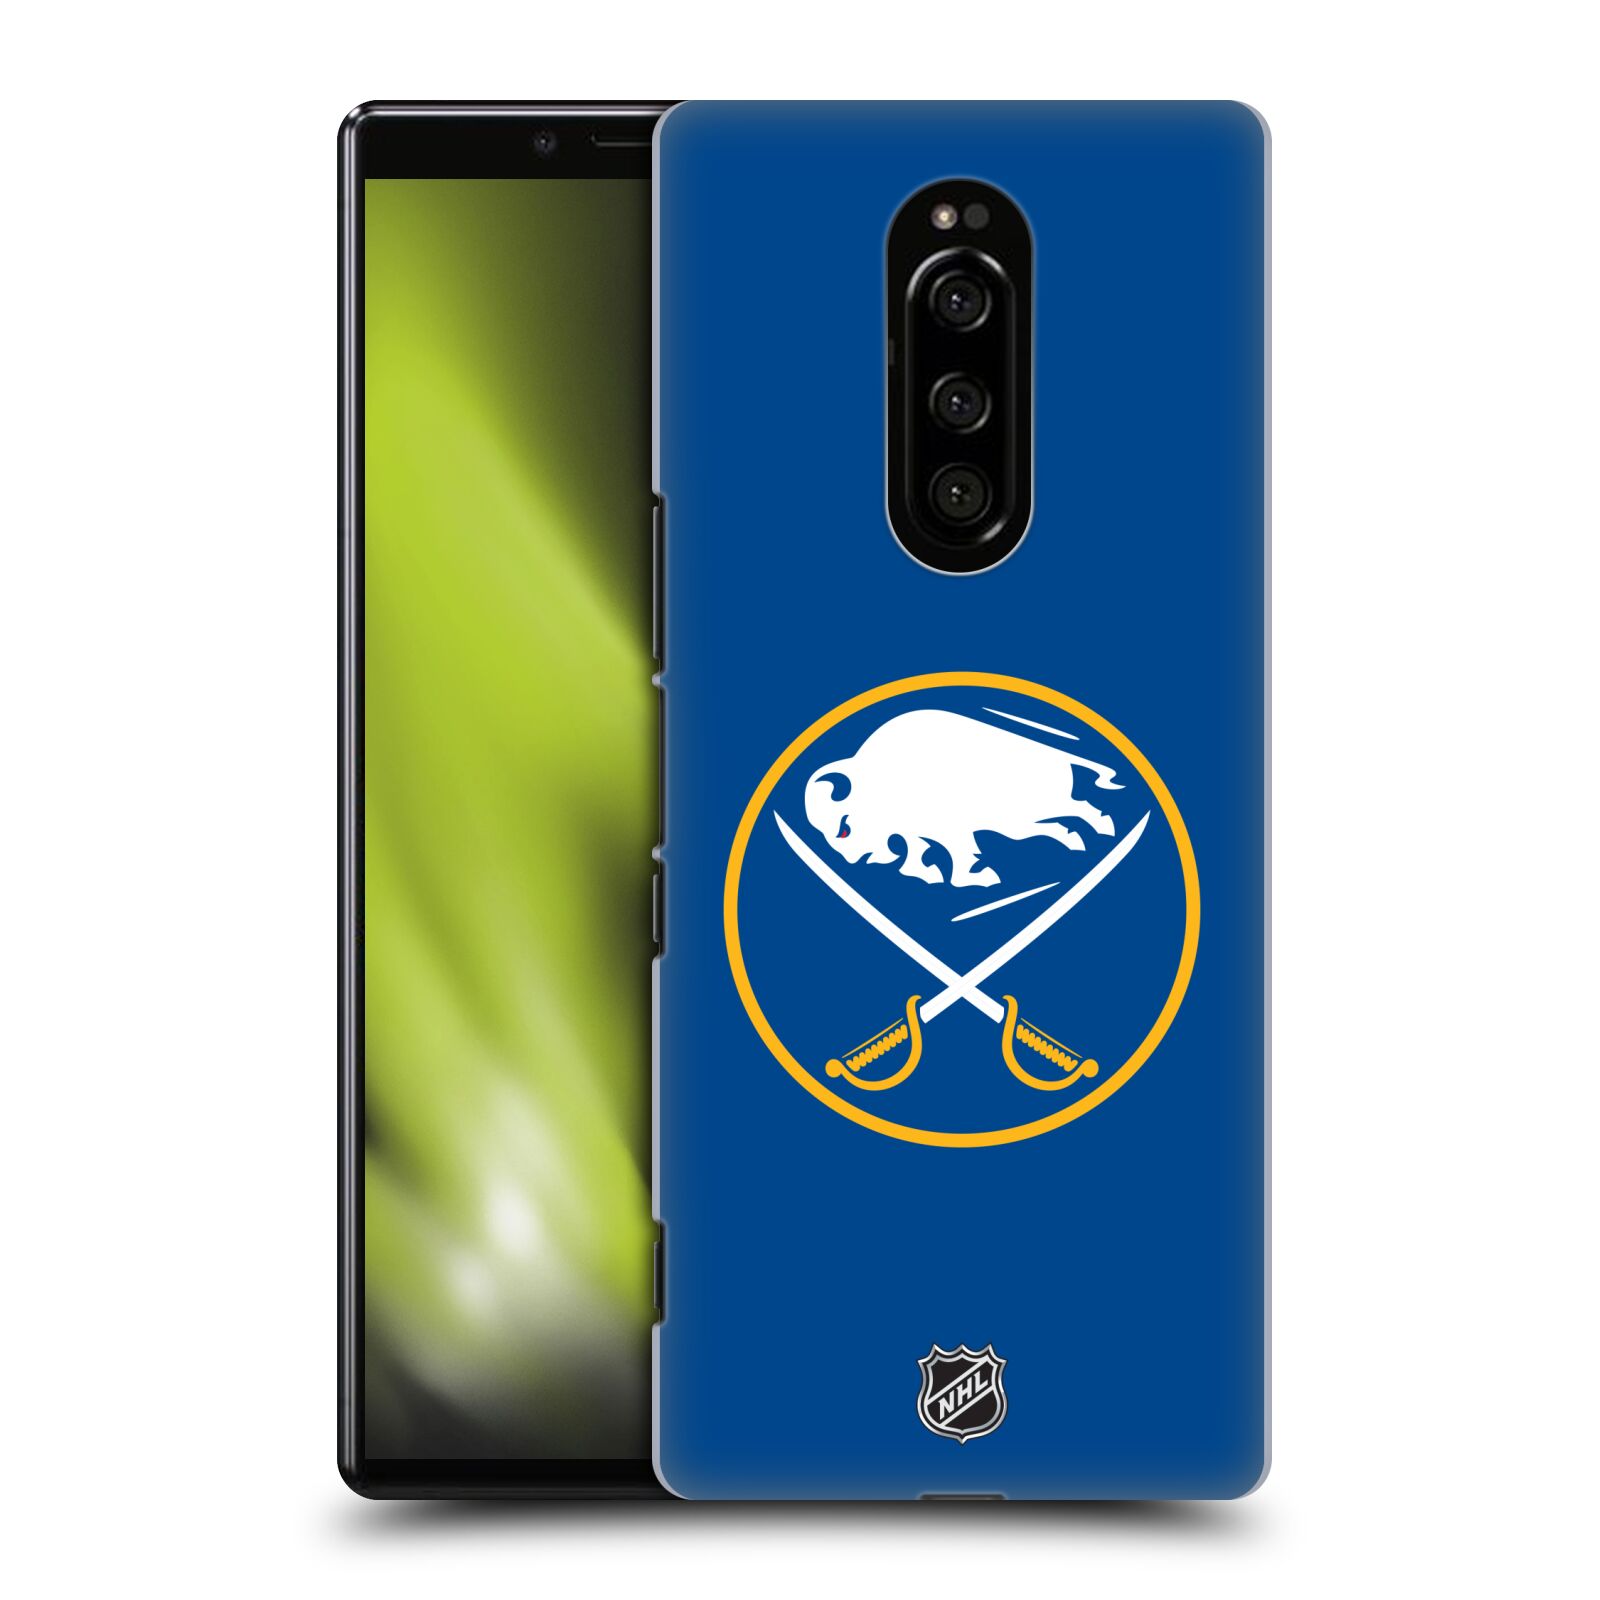 Pouzdro na mobil Sony Xperia 1 - HEAD CASE - Hokej NHL - Buffalo Sabres - modré pozadí